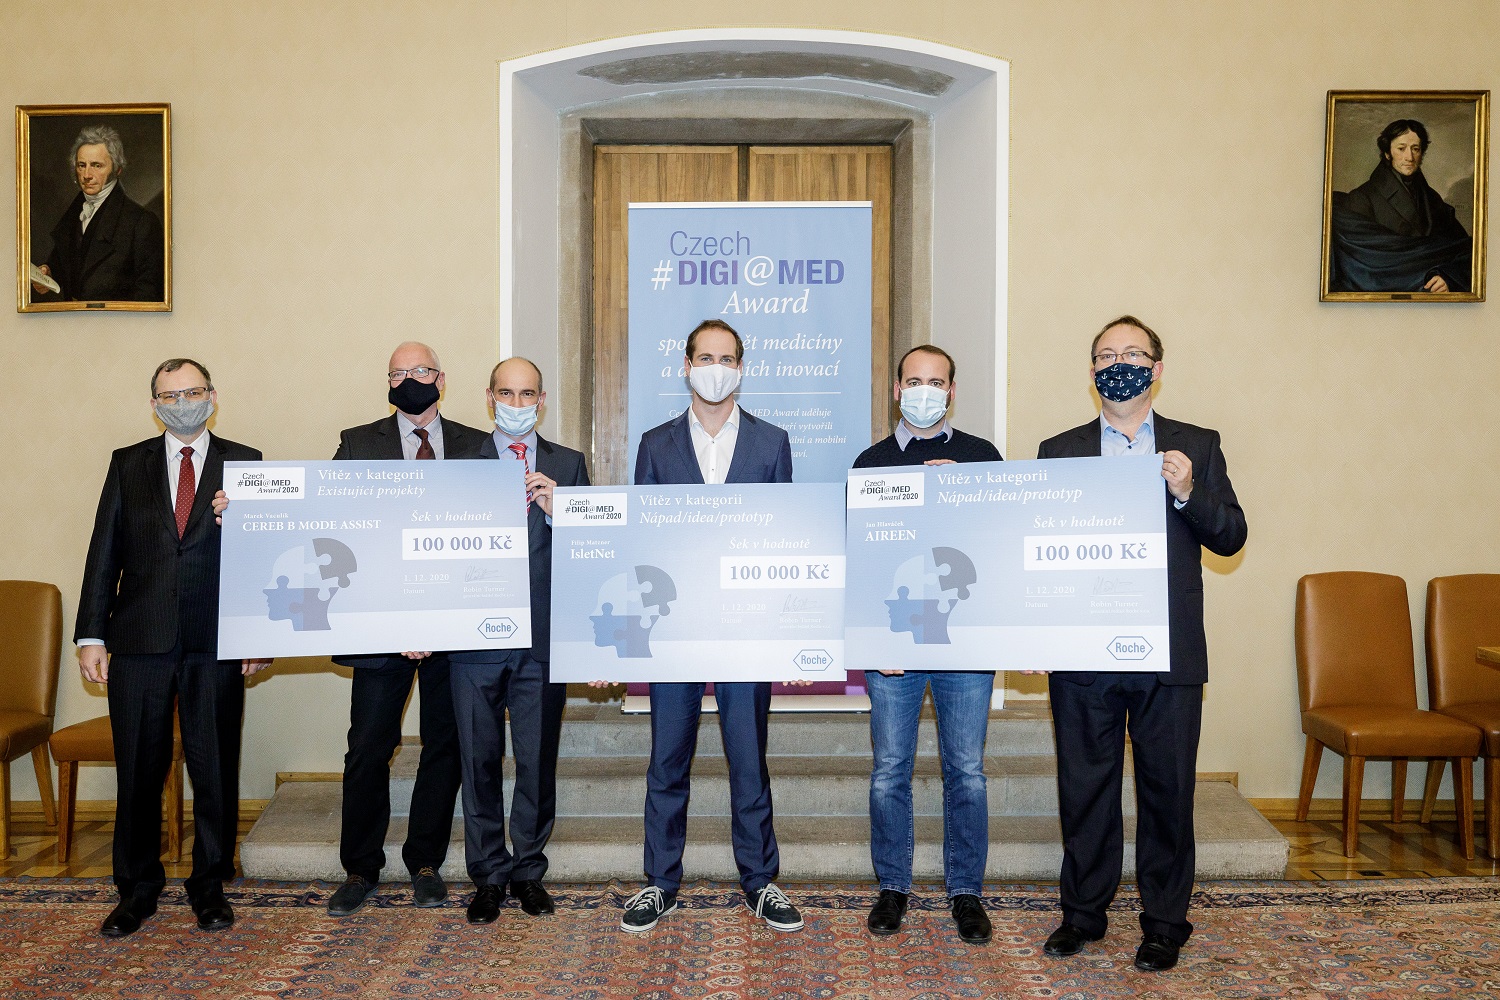 Produkt TESCO SW získal cenu Czech DIGI@MED Award za inovativní digitální řešení ve zdravotnictví